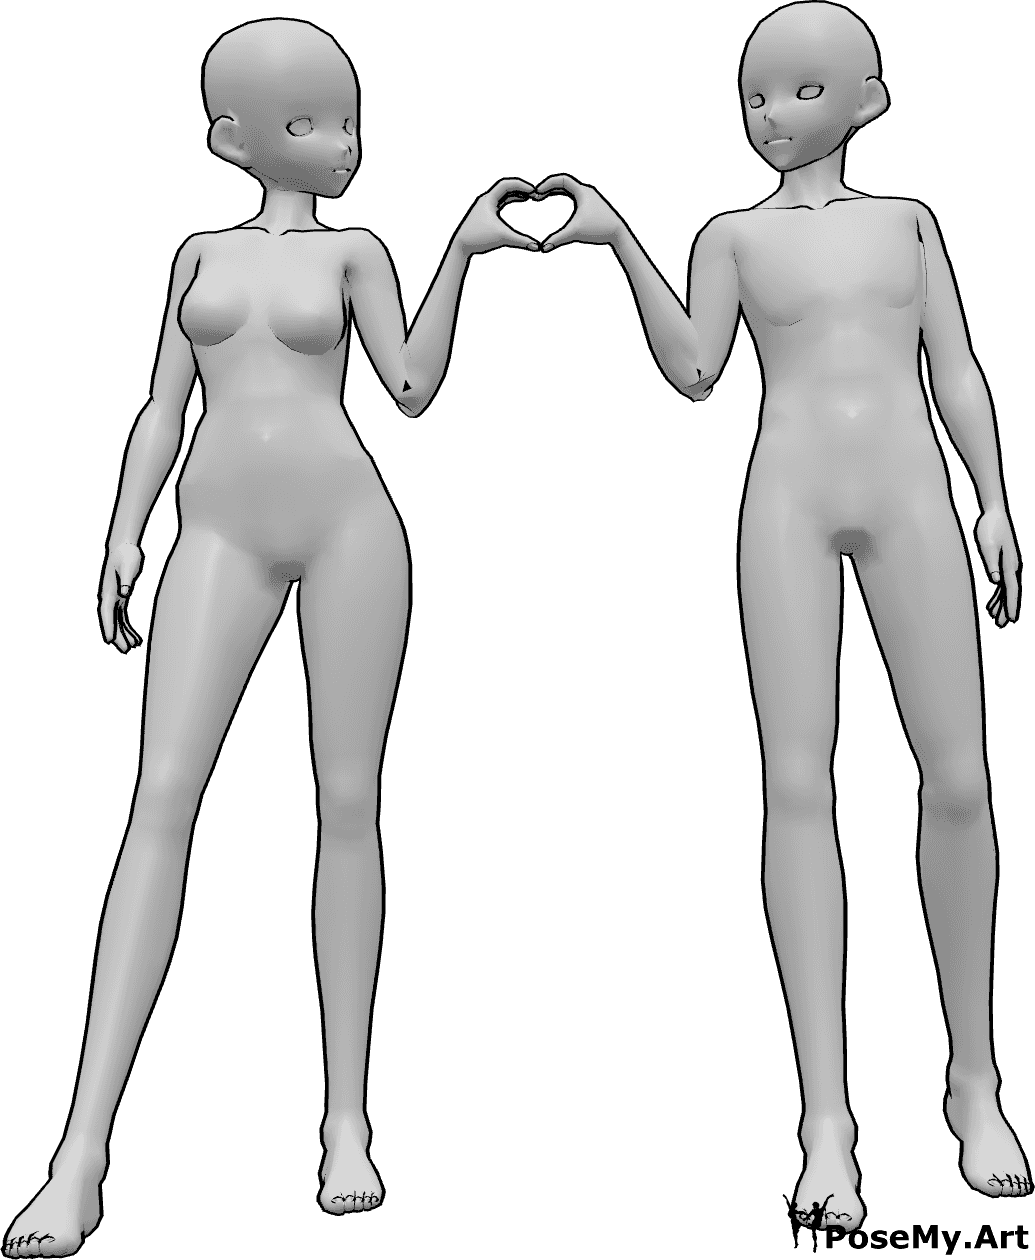 Referencia de poses- Postura de corazón femenino masculino - Anime femenino y masculino están de pie uno al lado del otro y haciendo un corazón con sus manos